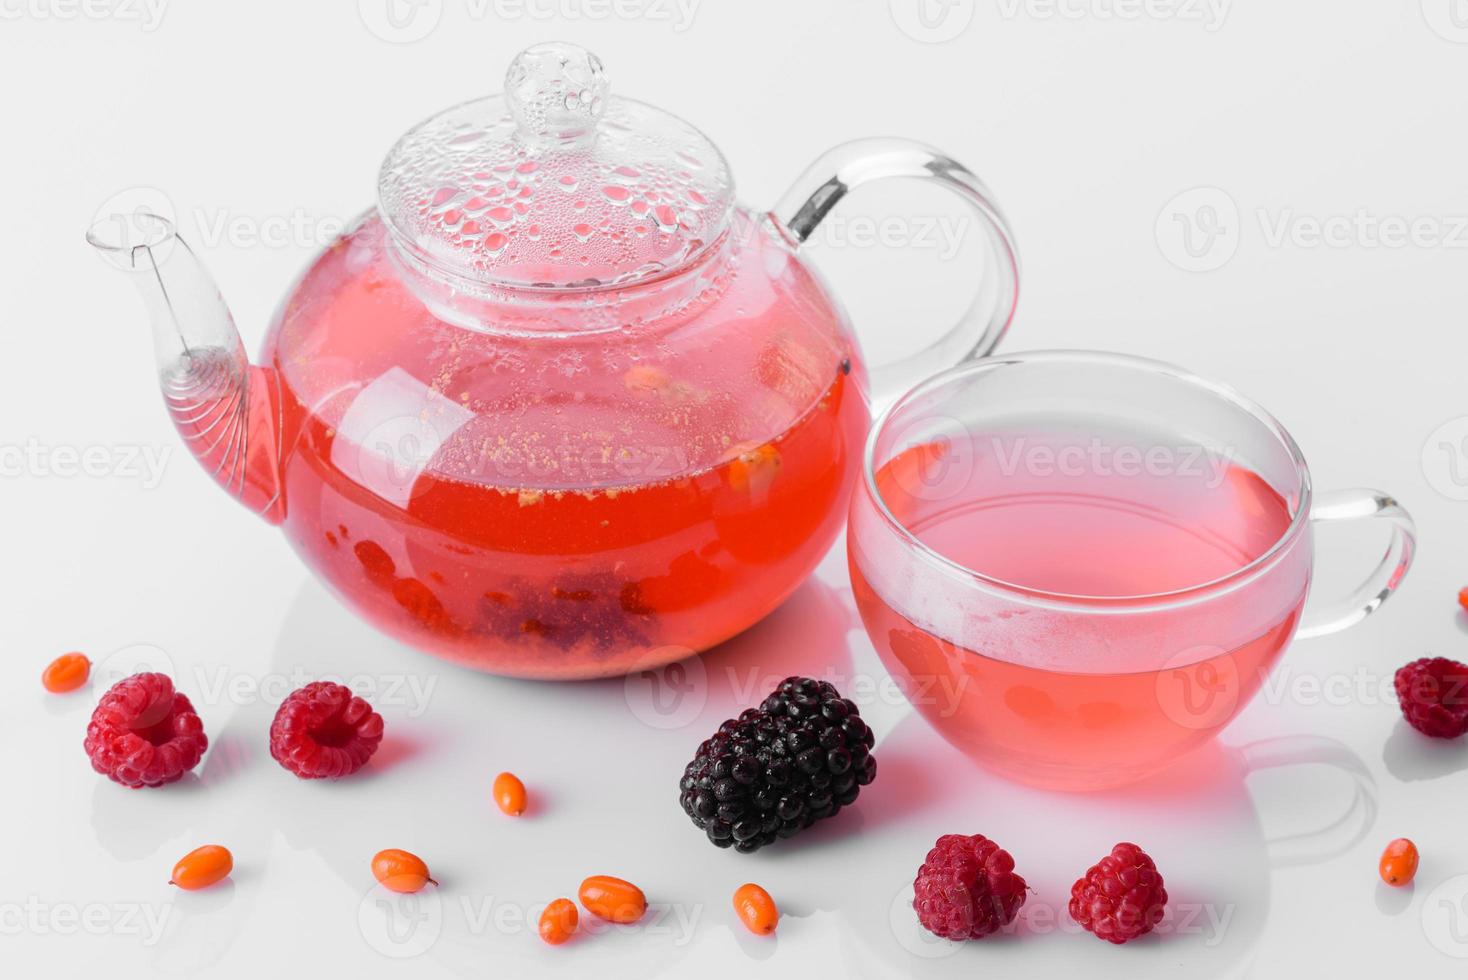 utsökt te av bär och frukter i en vacker glas tekanna på en vit bakgrund med reflektion foto